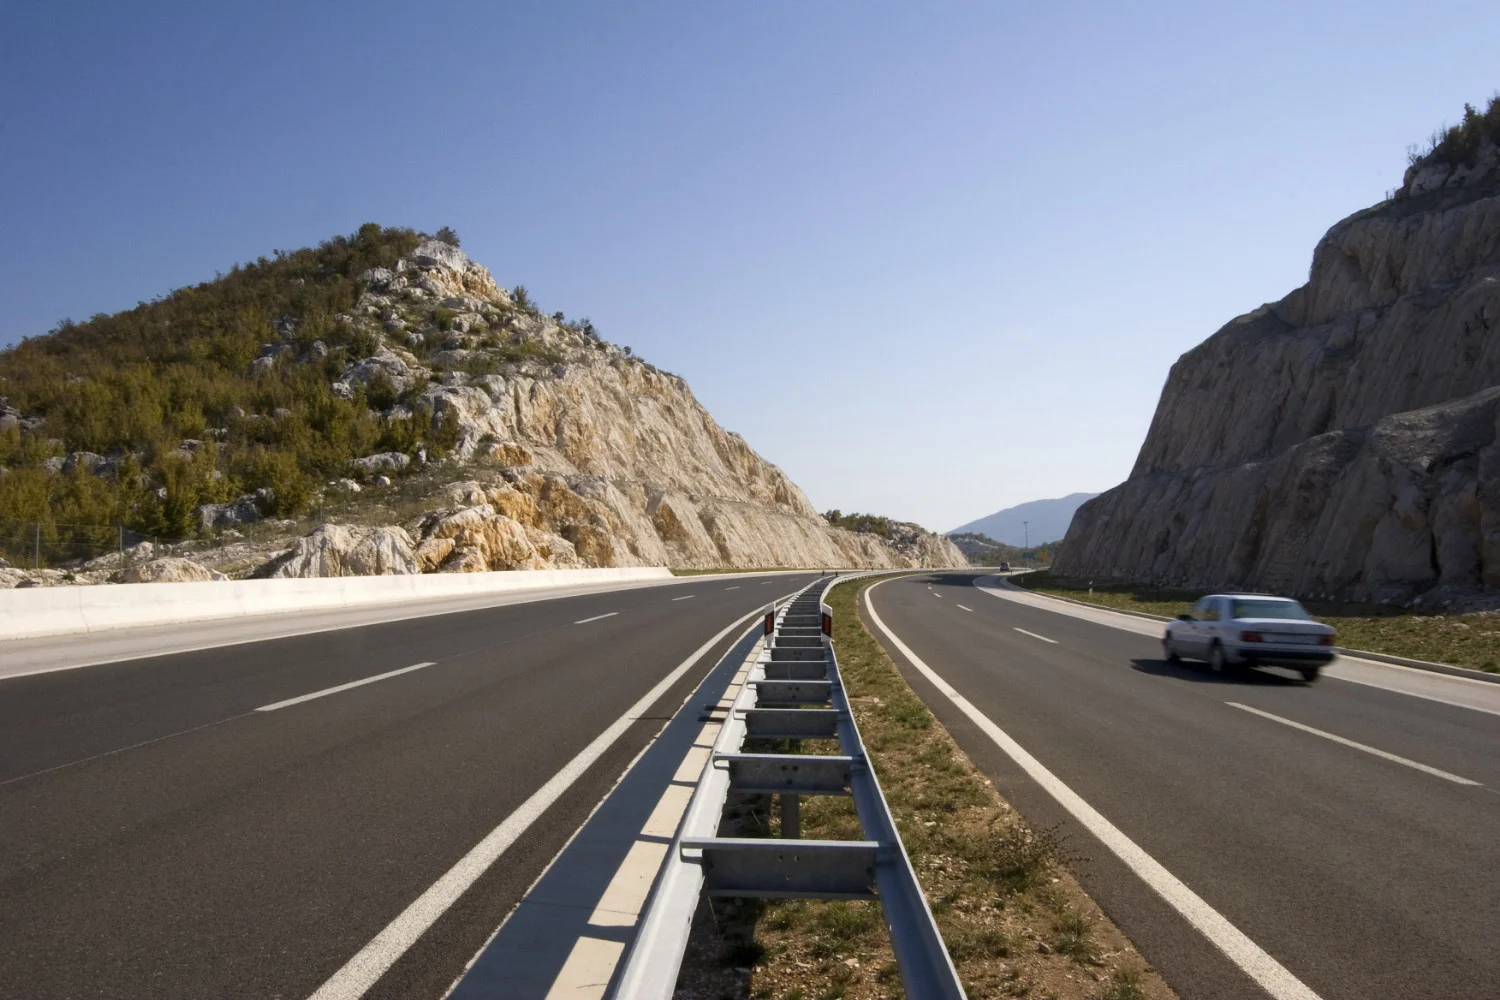 Kroatian moottoritiet ovat tunnettuja korkeista nopeusrajoituksistaan. Kroatian moottoriteiden nopeusrajoitus on 130 km/h.